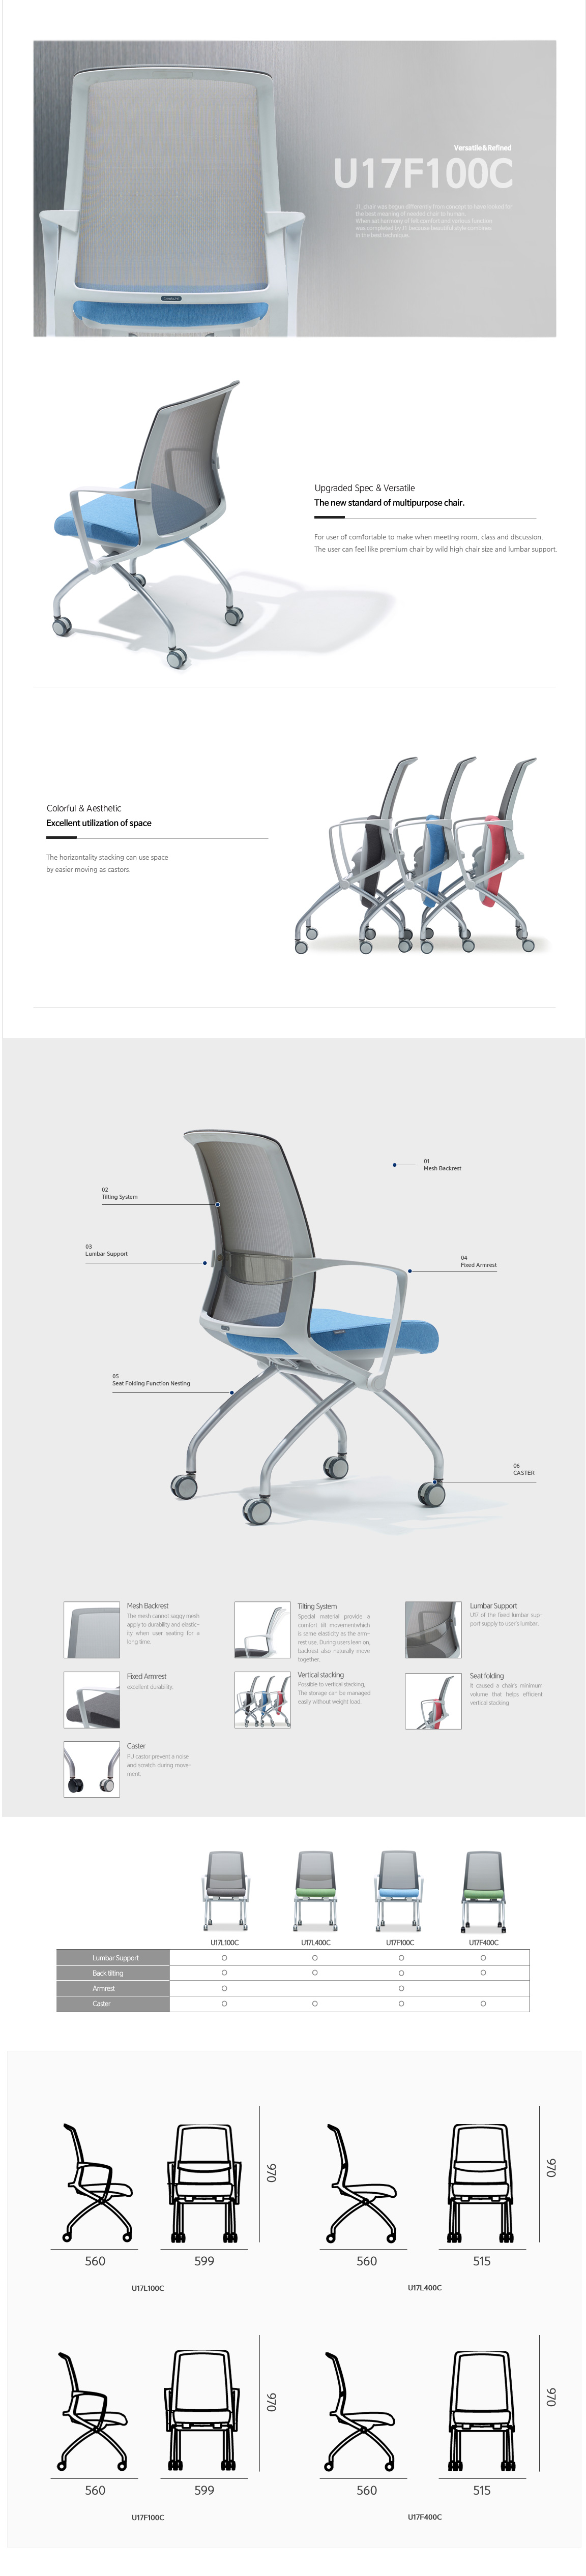 Luxdezine Multipurpose Chairs U17F100C